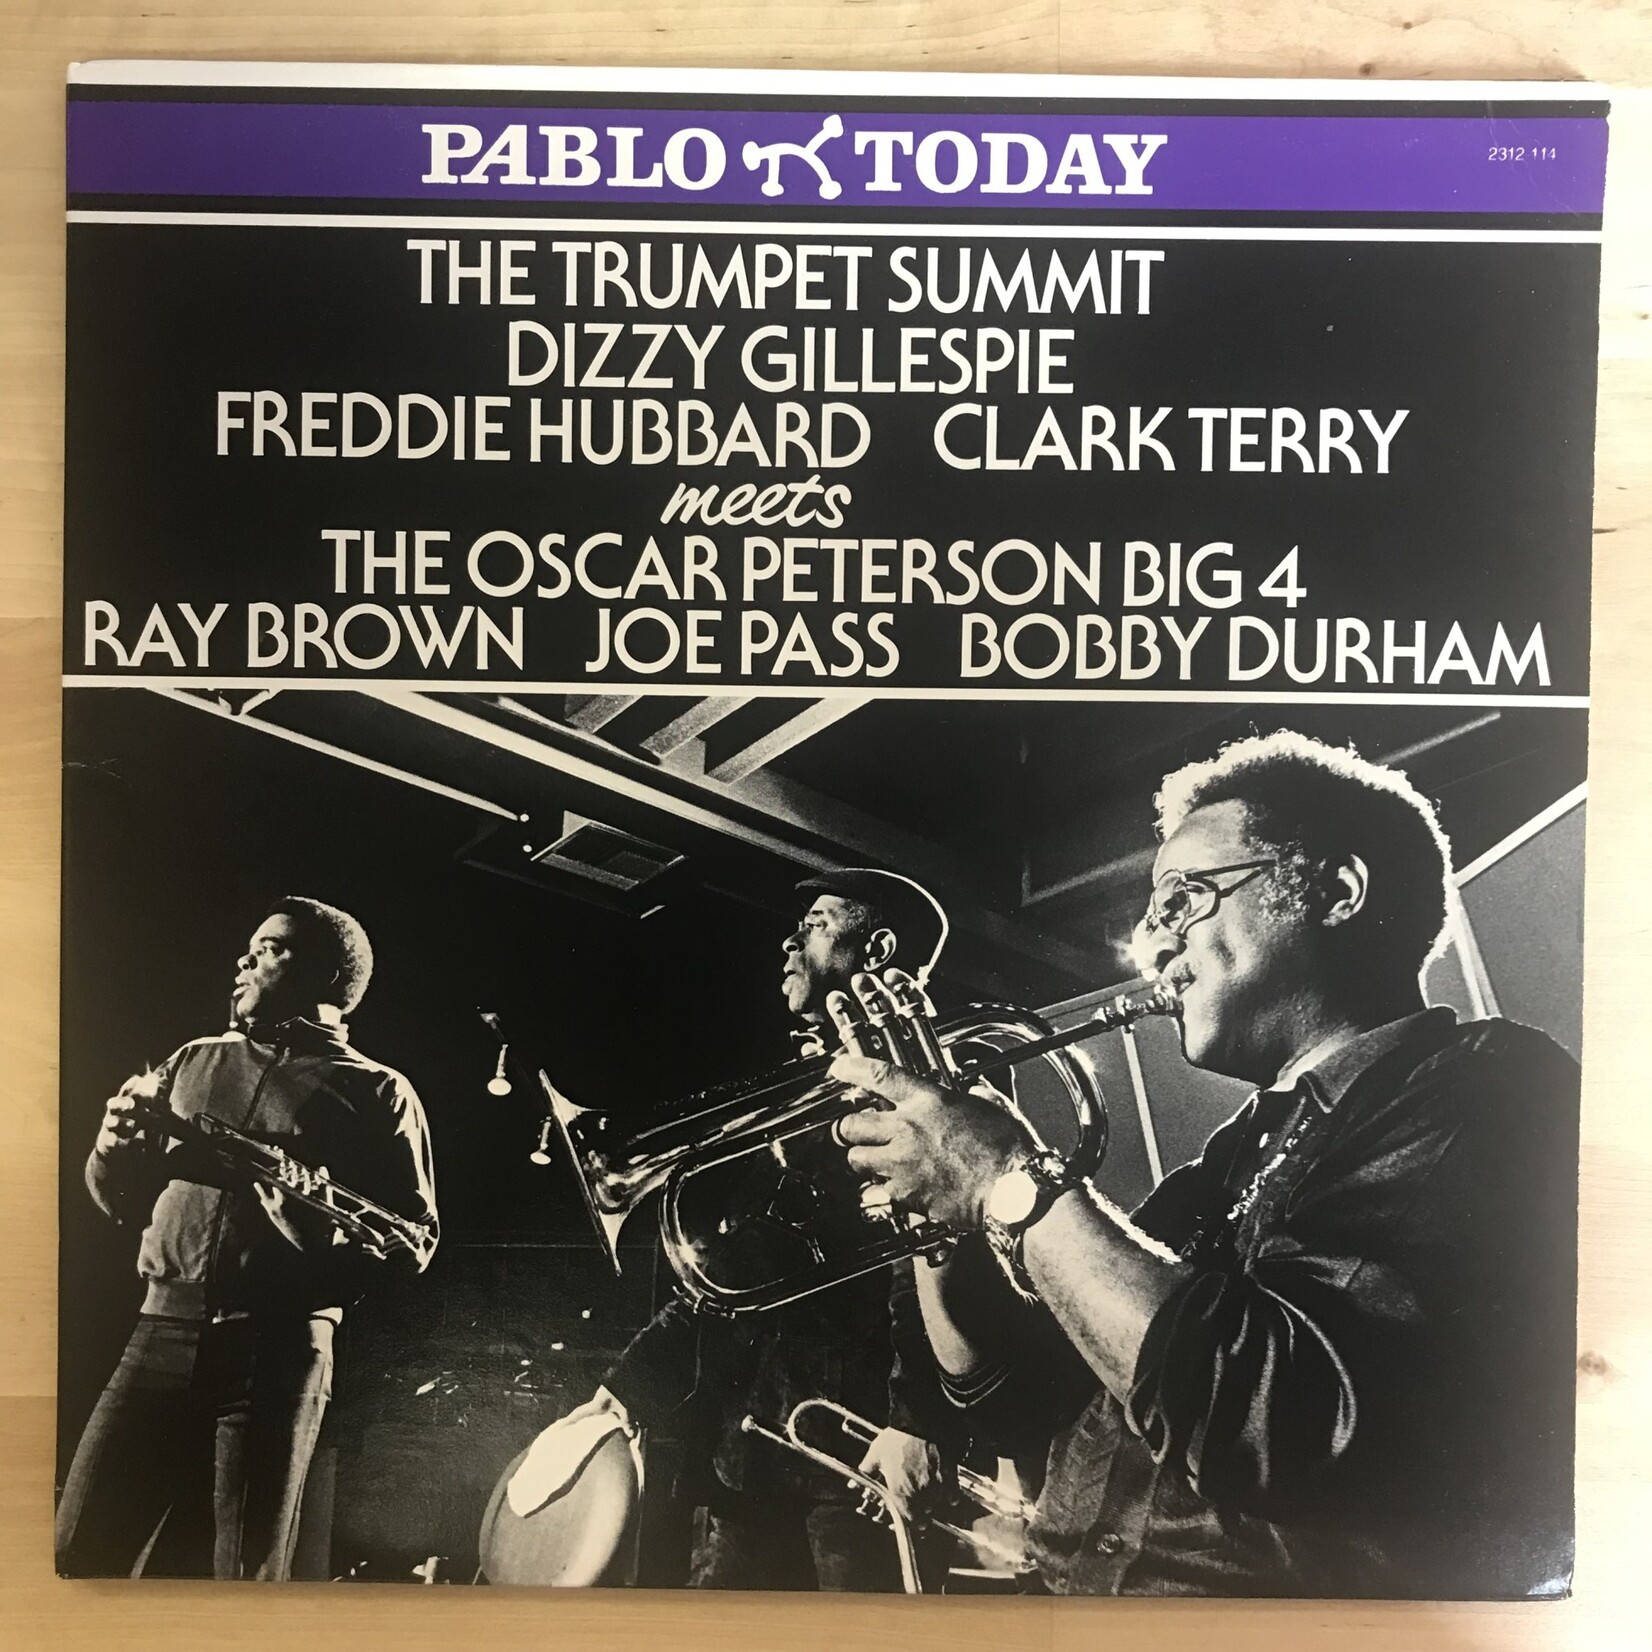 Dizzy Gillespie, Oscar Peterson, et. al - Trumpet Summit Meets The Oscar Peterson Four - 2312 114 - Vinyl LP (USED)